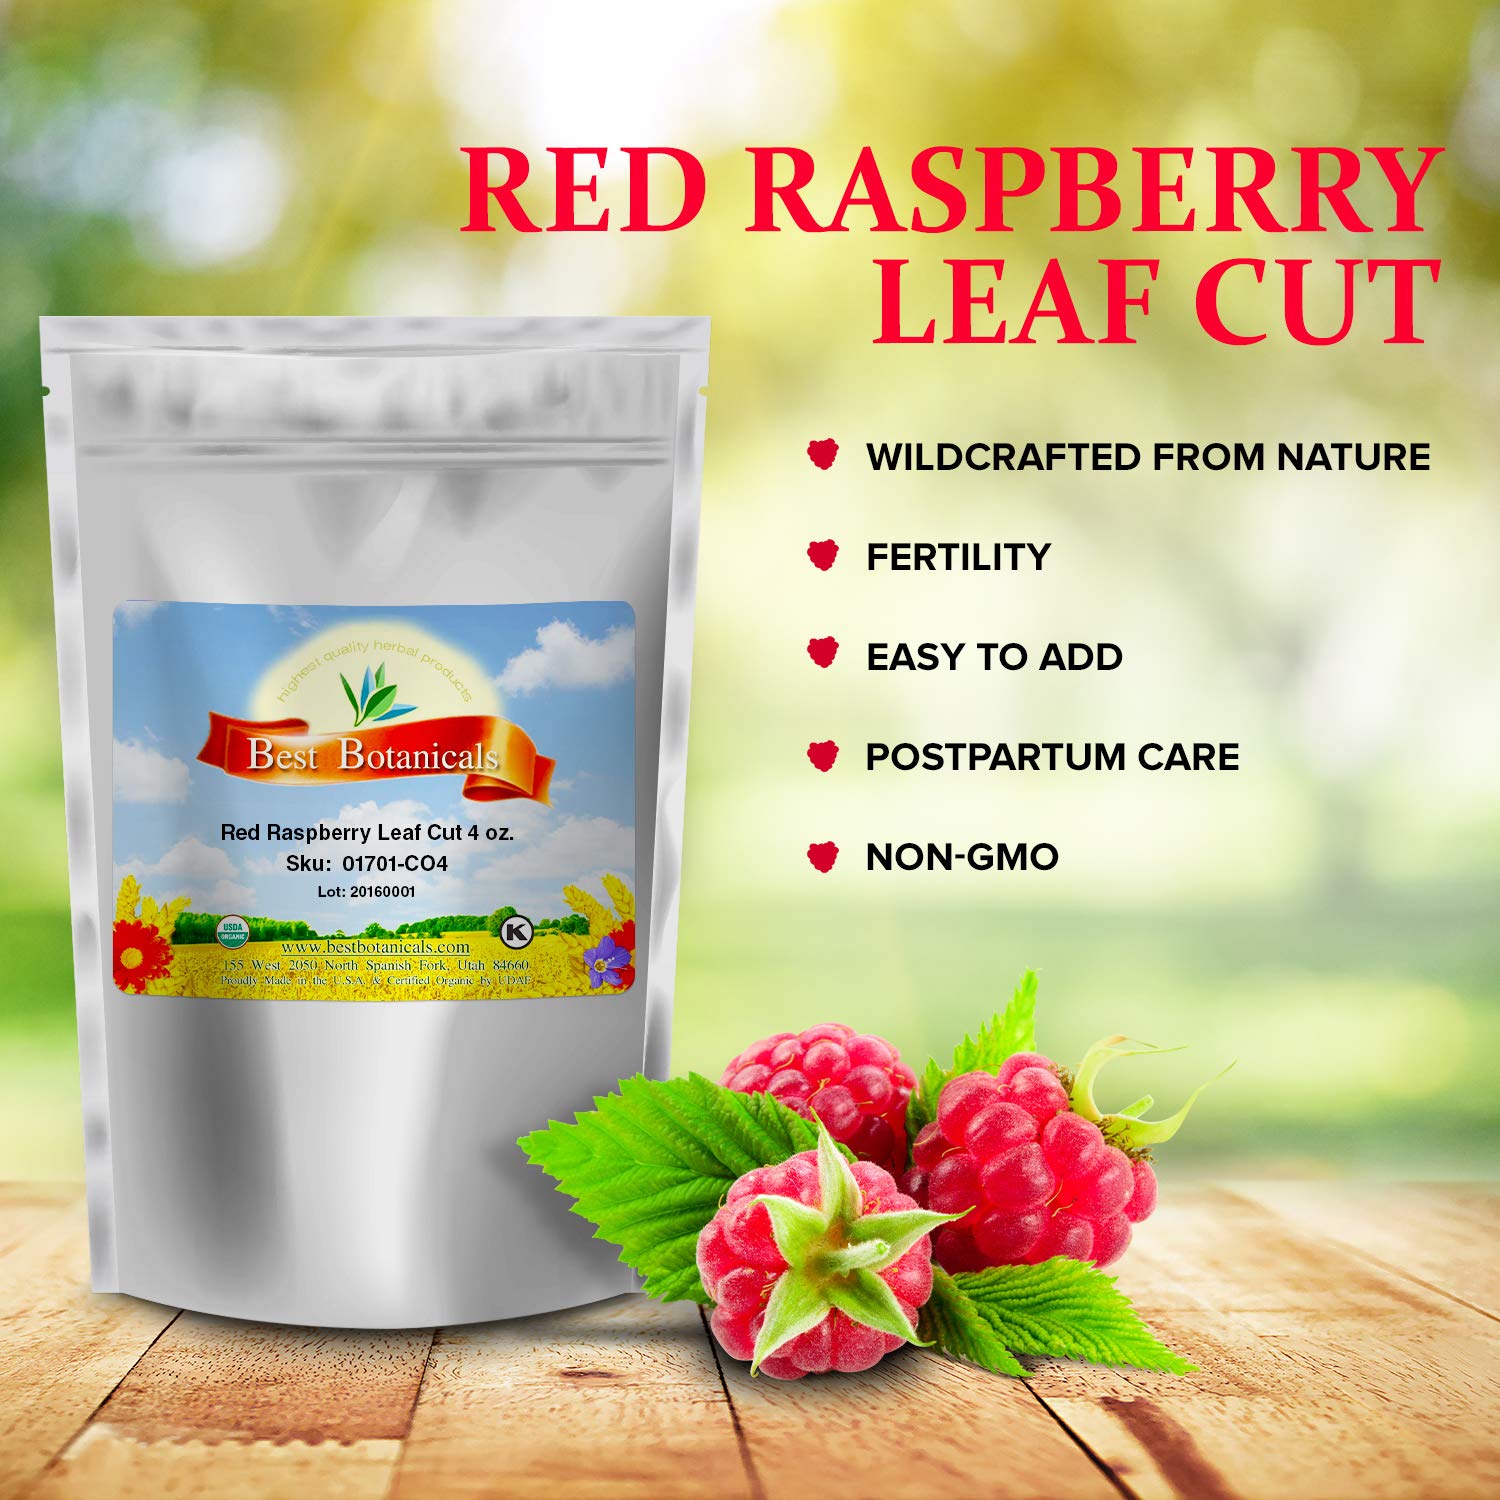 Best Botanicals Red Raspberry Leaf Cut 4 oz. (Organic)